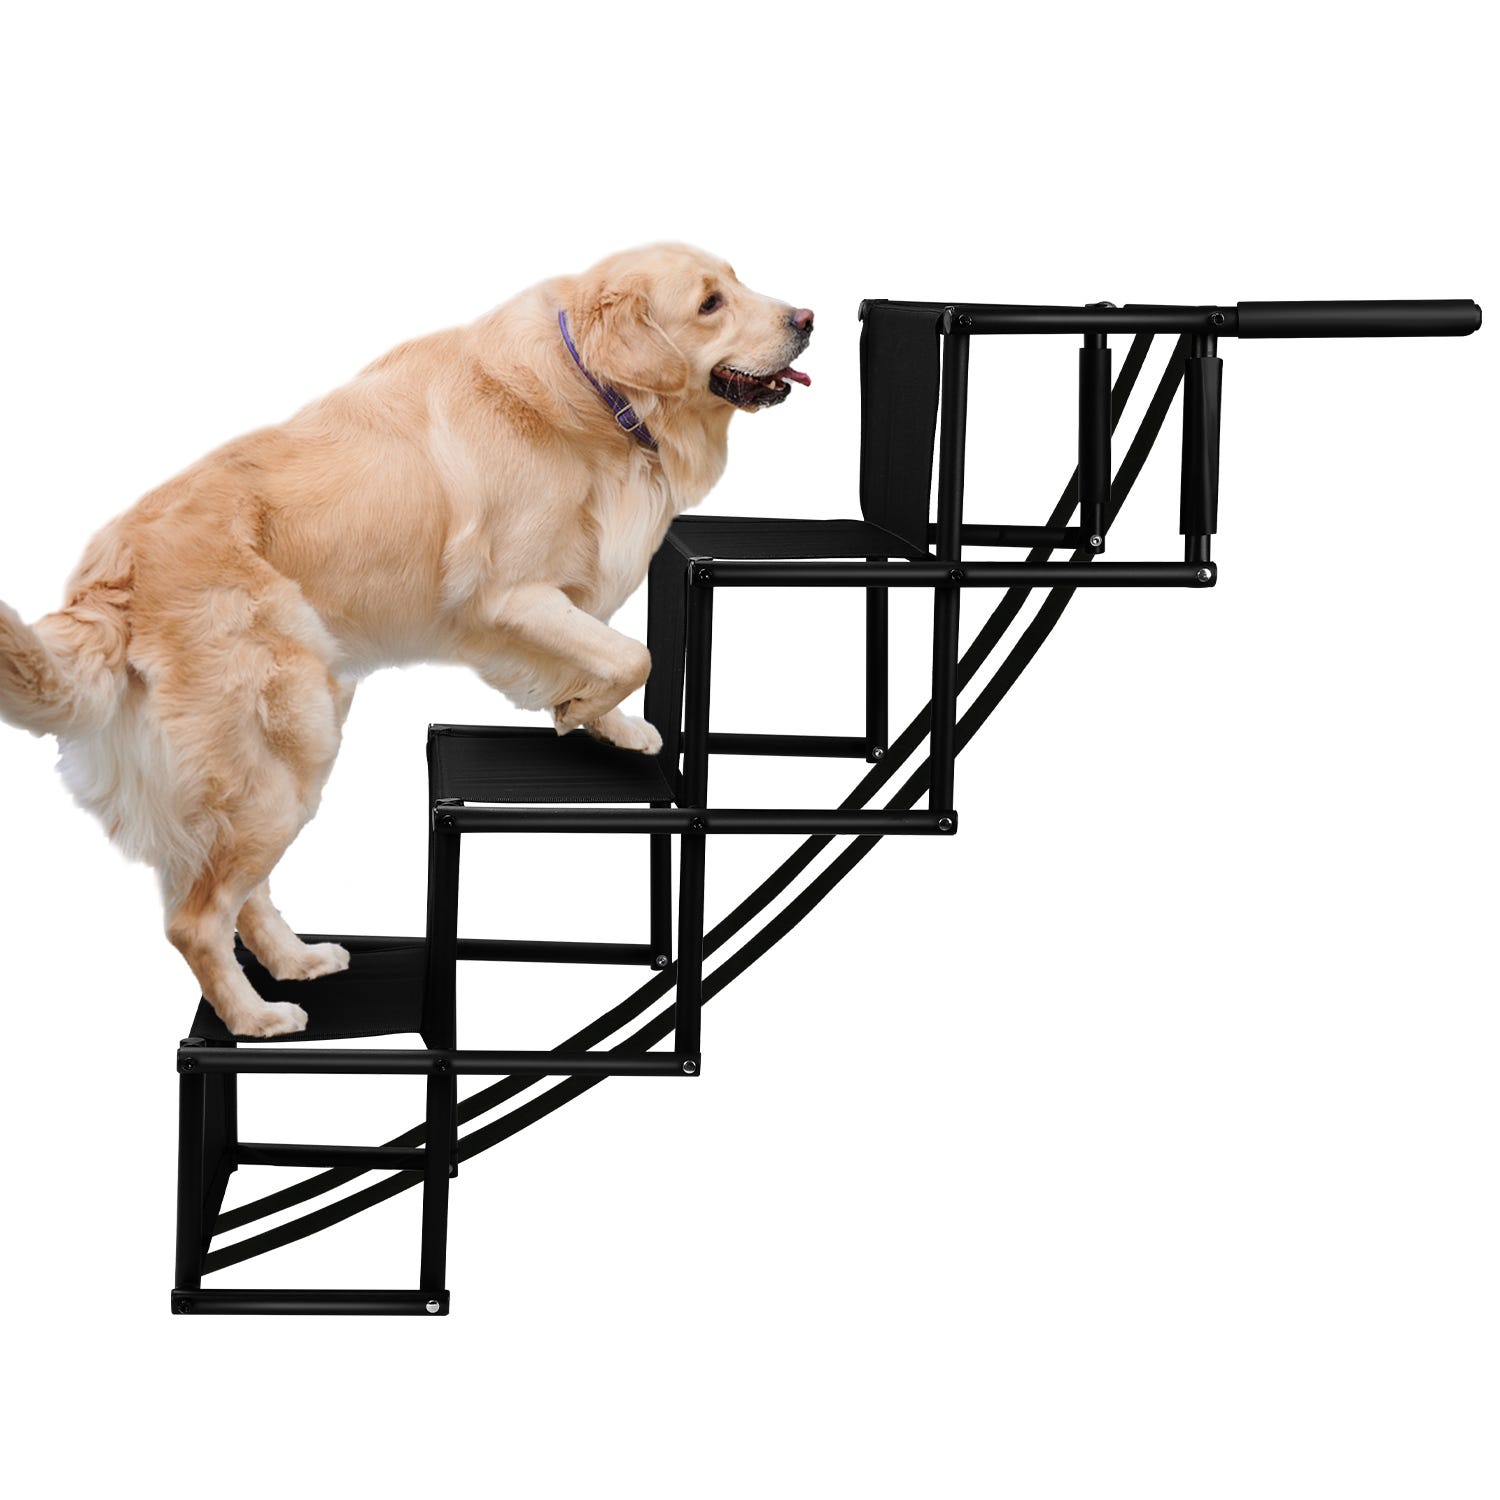 Escalier pour chien, Rampe pour chien, pliable, Escalier pliable pour Chiens,  rampe pour chien,jusqu'à 60kg, pour Les Voitures Lit